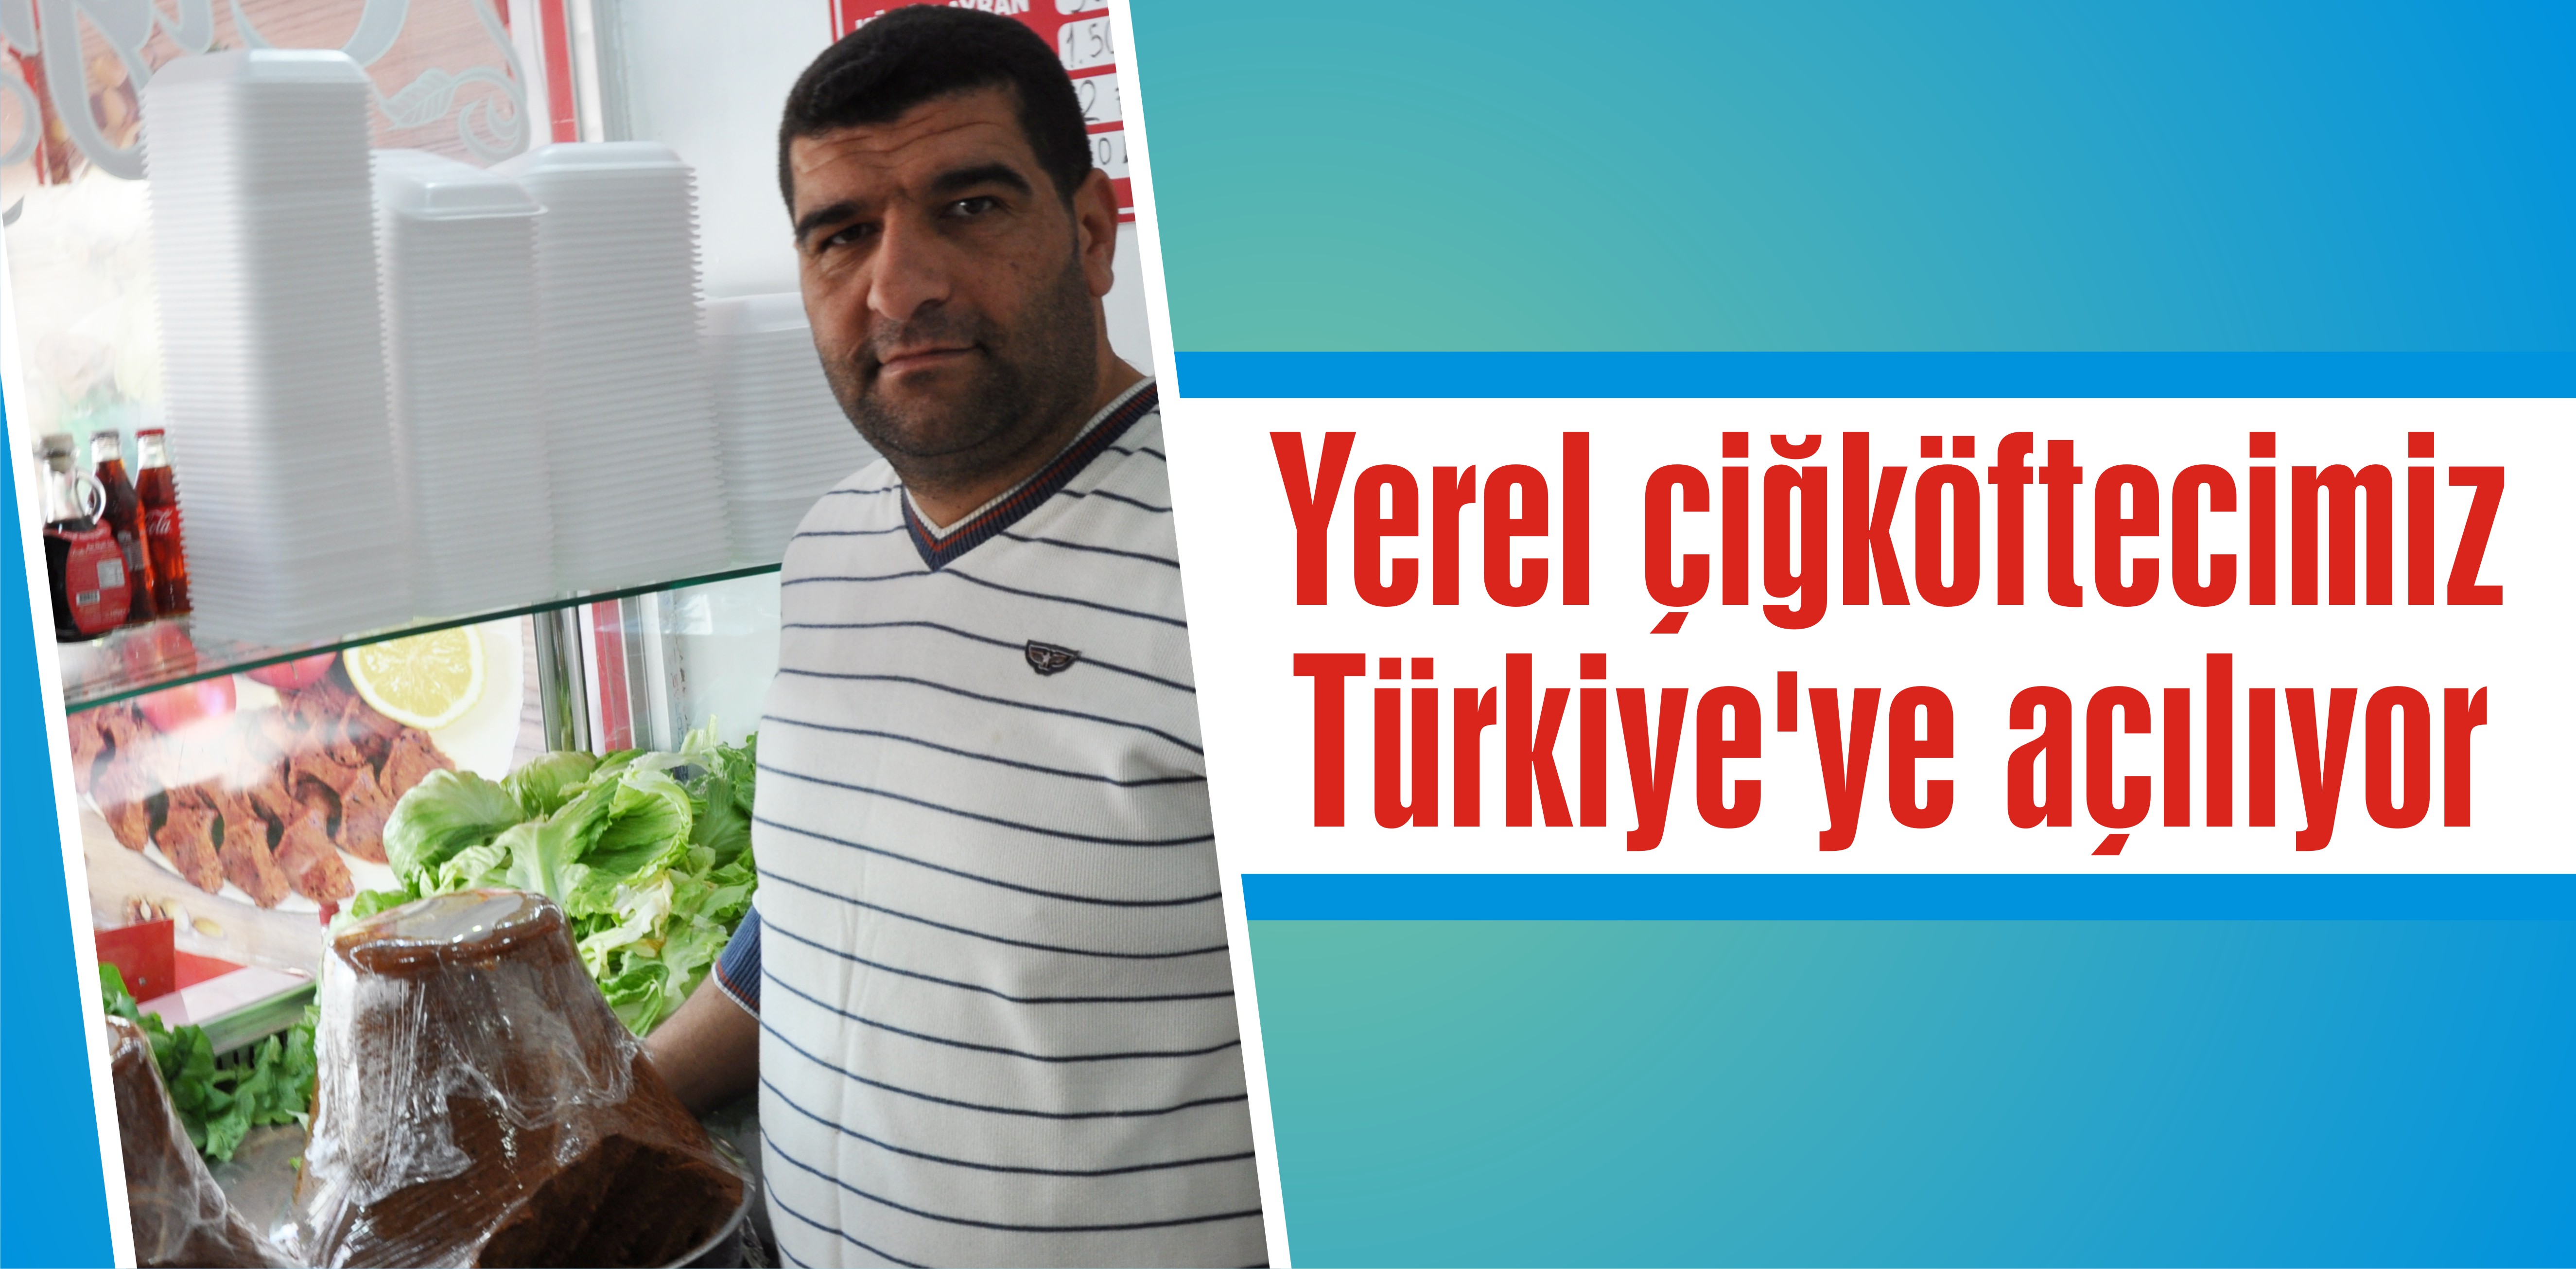 Yerel çiğköftecimiz Türkiye’ye açılıyor